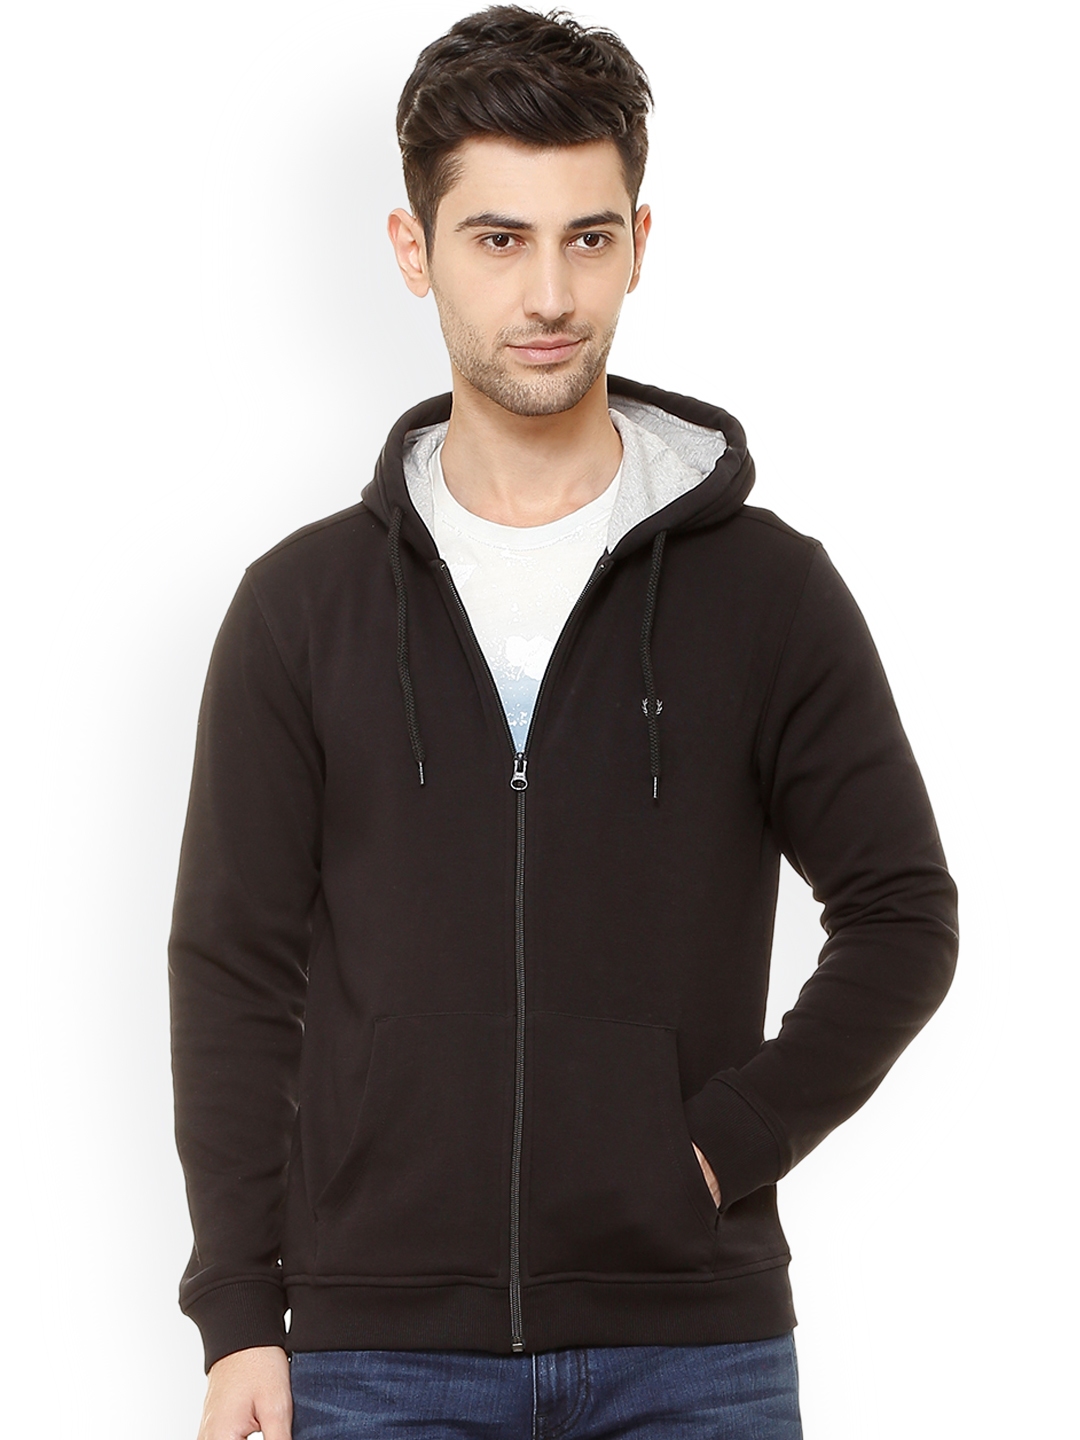 Buy Allen Solly Men Black Solid Hooded Sweatshirt - Sweatshirts for Men ...